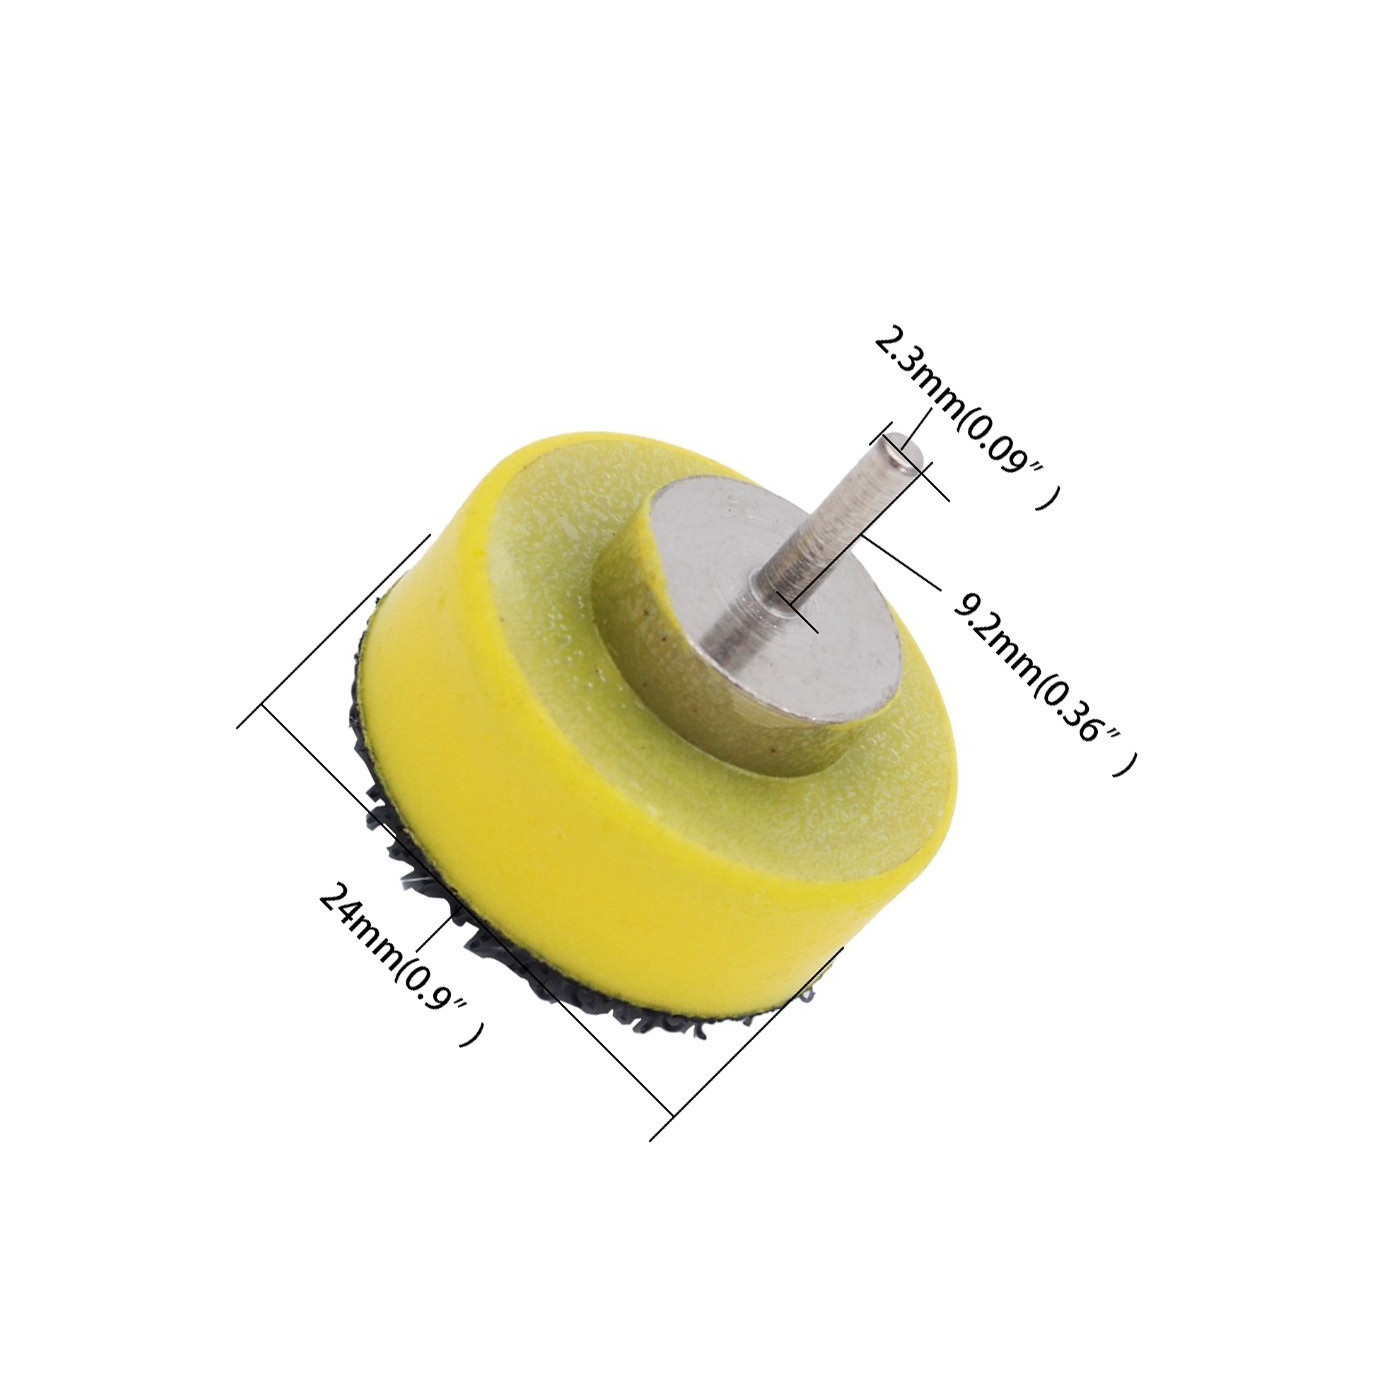 Schuurschijfhouder, 25 mm, voorzien van klittenband